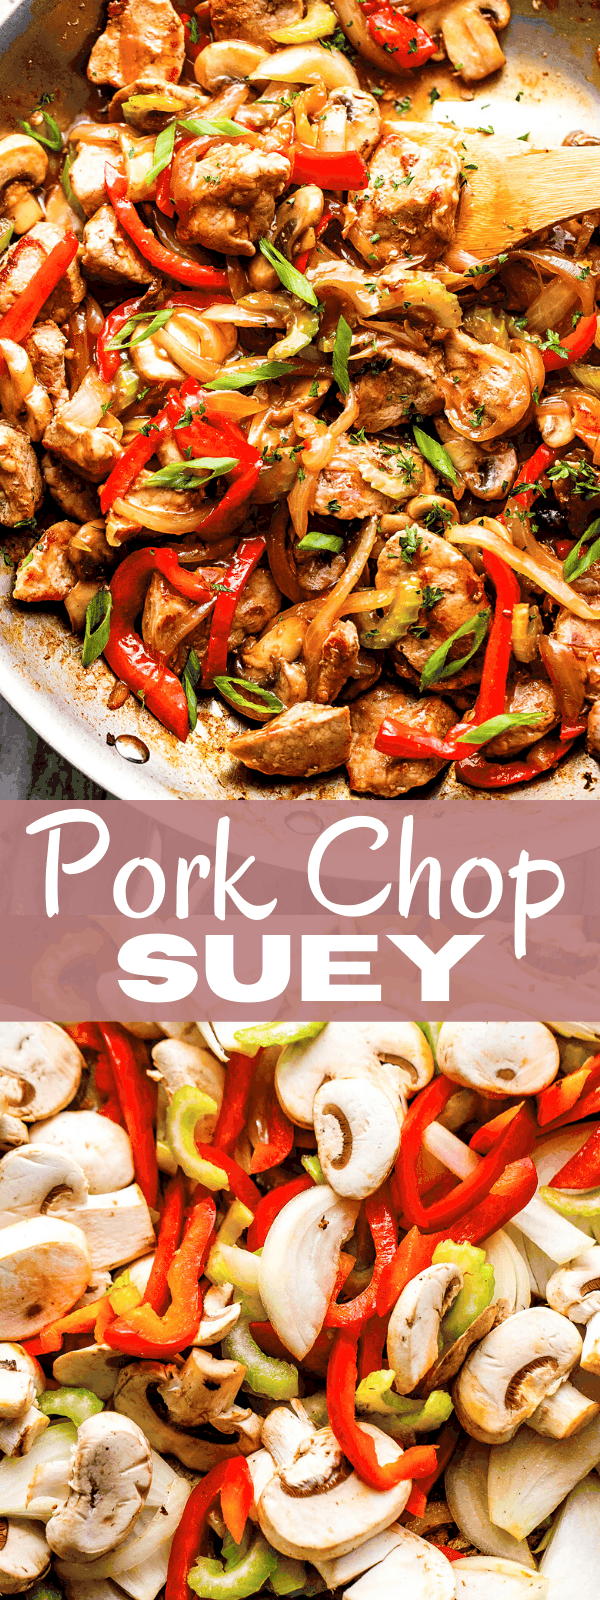 recipes for pork chop suey.